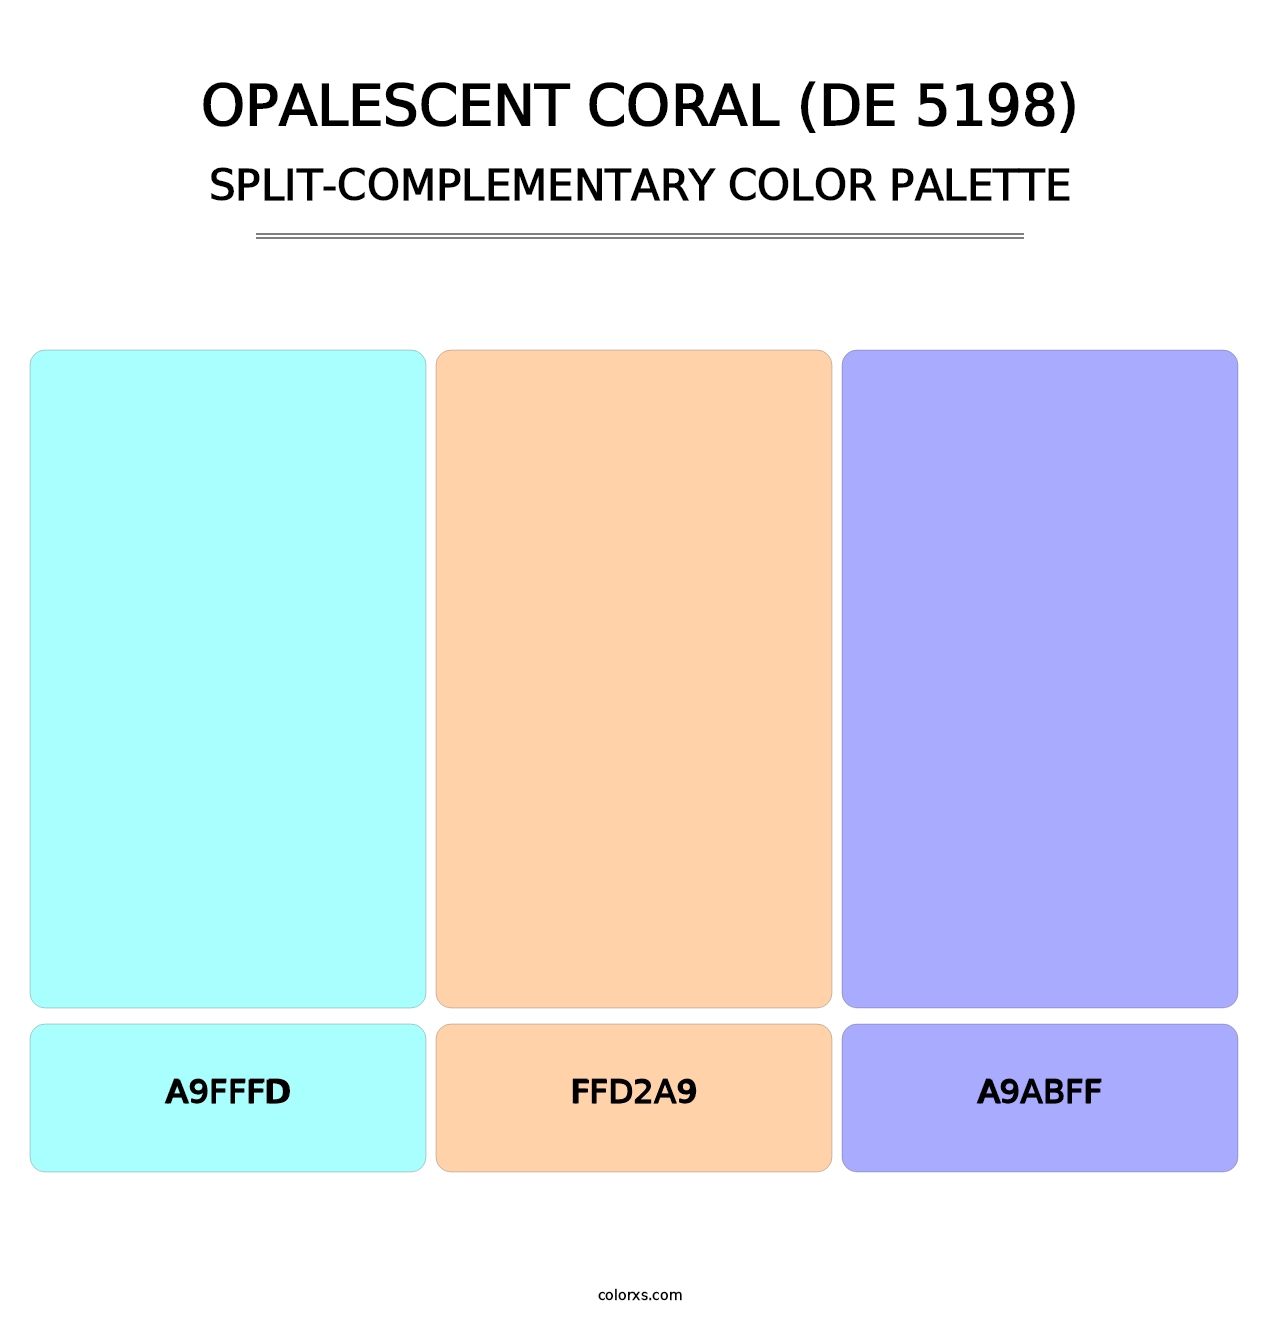 Opalescent Coral (DE 5198) - Split-Complementary Color Palette